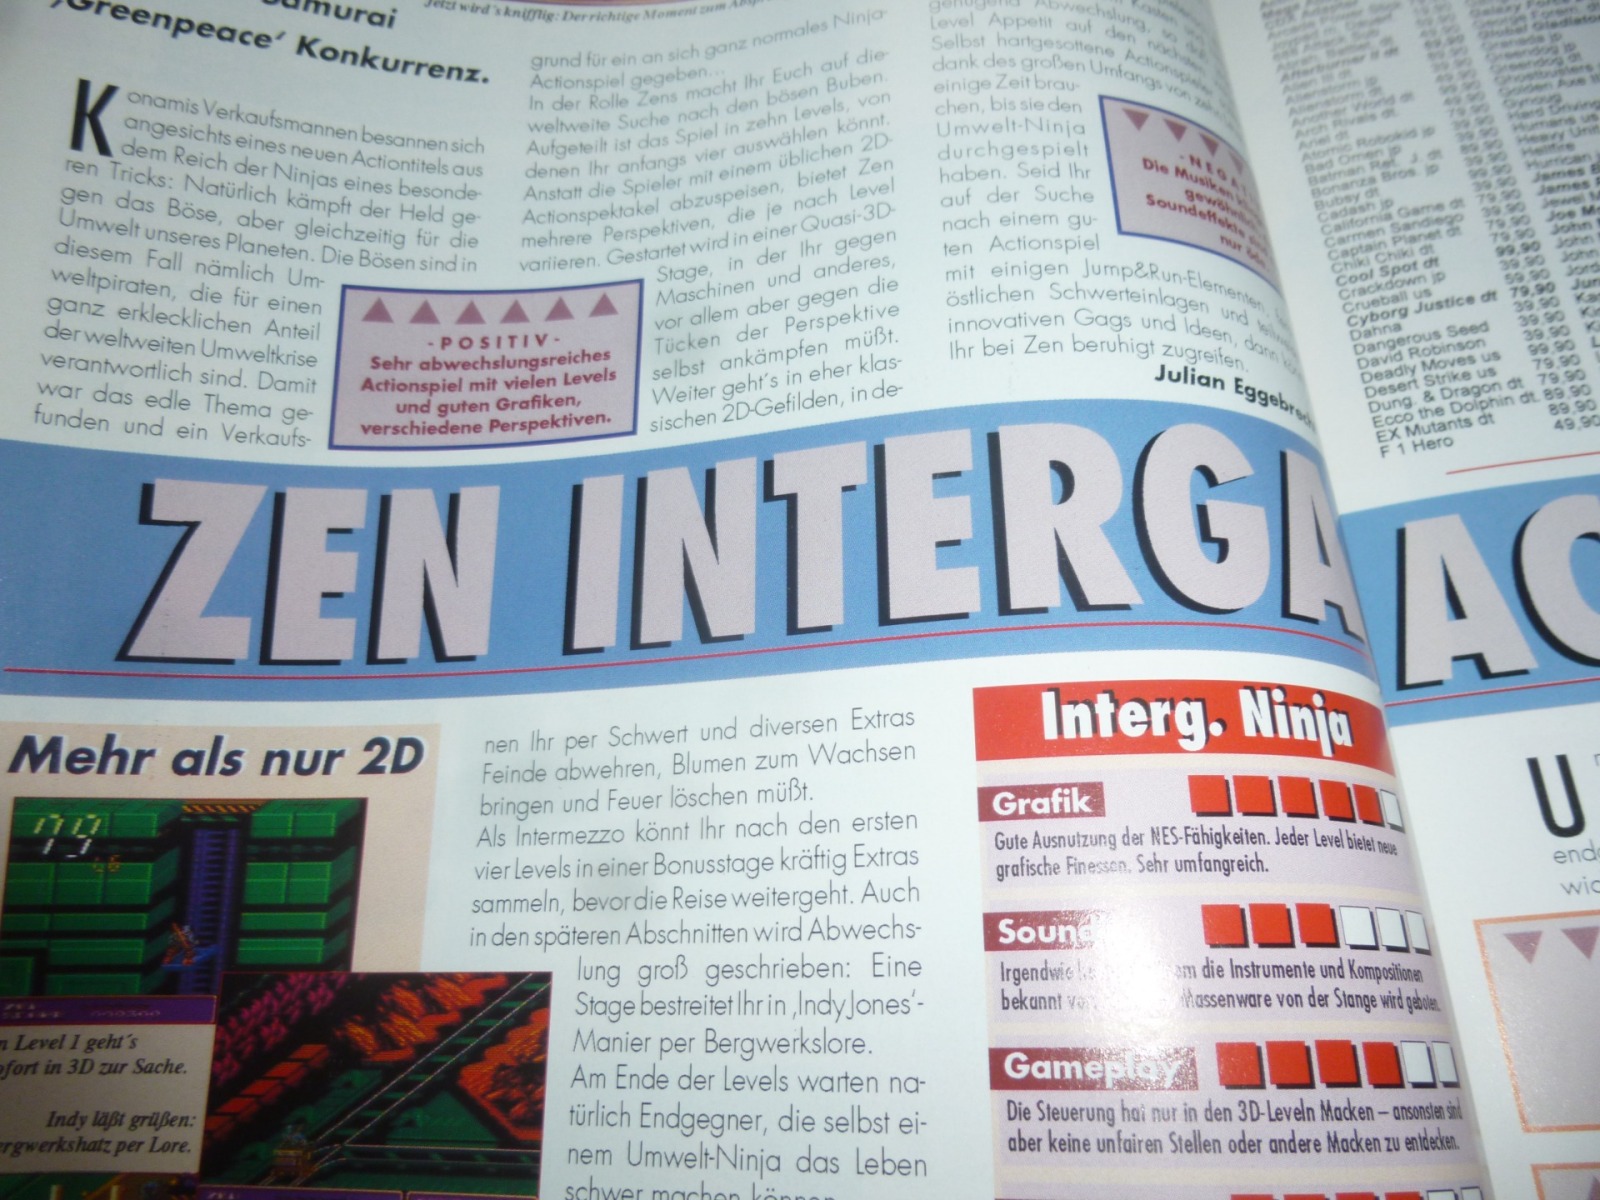 TOTAL Das unabhängige Magazin - 100% Nintendo - Ausgabe 9/93 1993 14